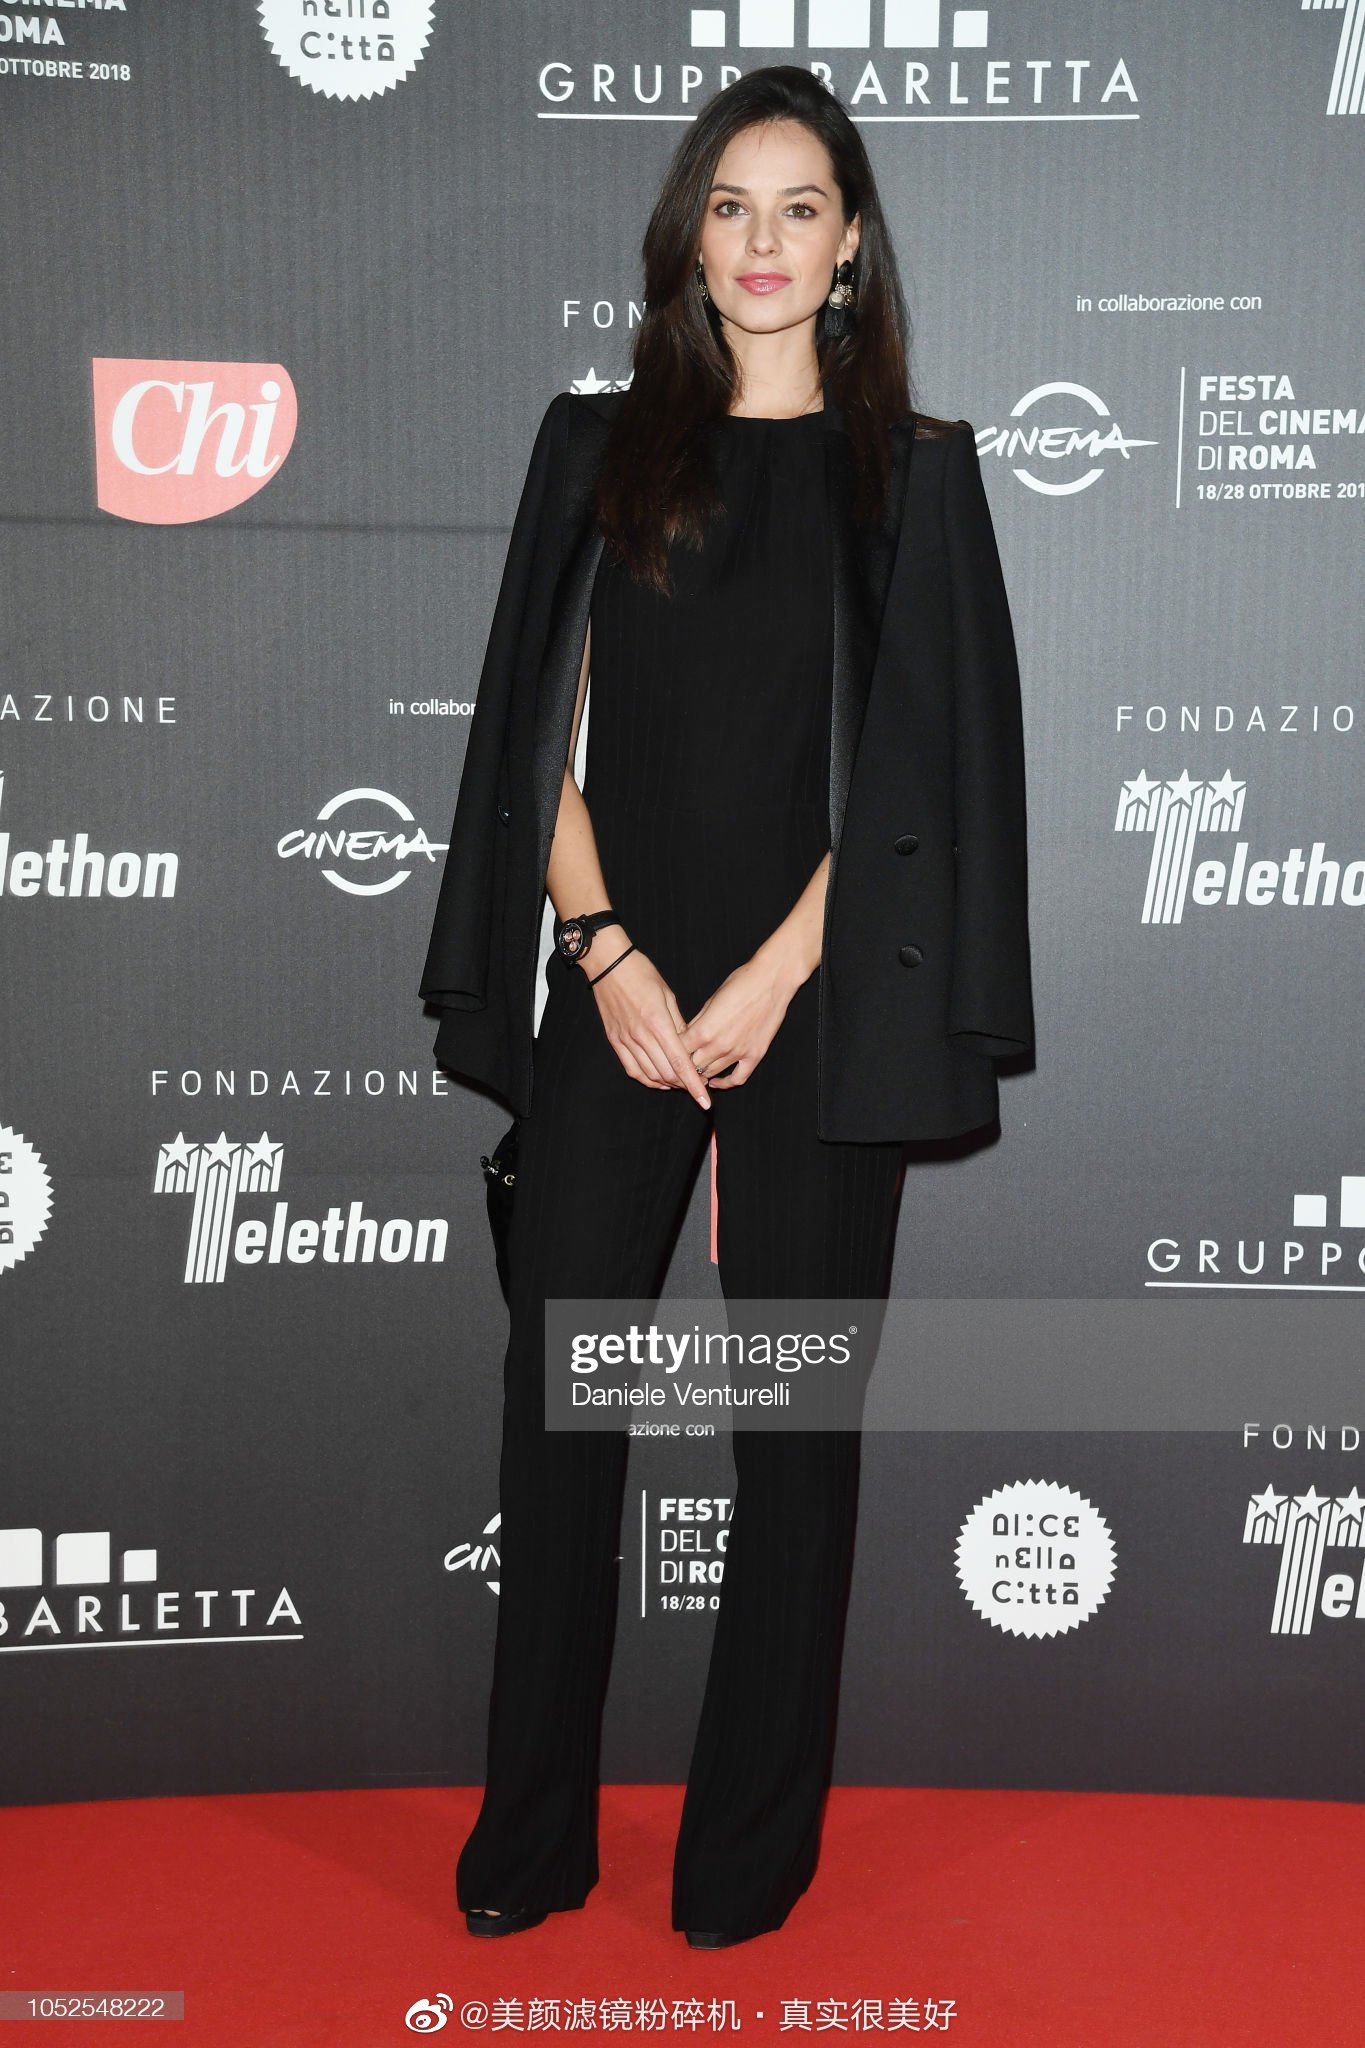 Soi bạn gái Song Joong Ki đi sự kiện: Xa xa thì đẹp chấp cả hung thần Getty Images, zoom gần lại lộ bằng hết khuyết điểm - Ảnh 6.